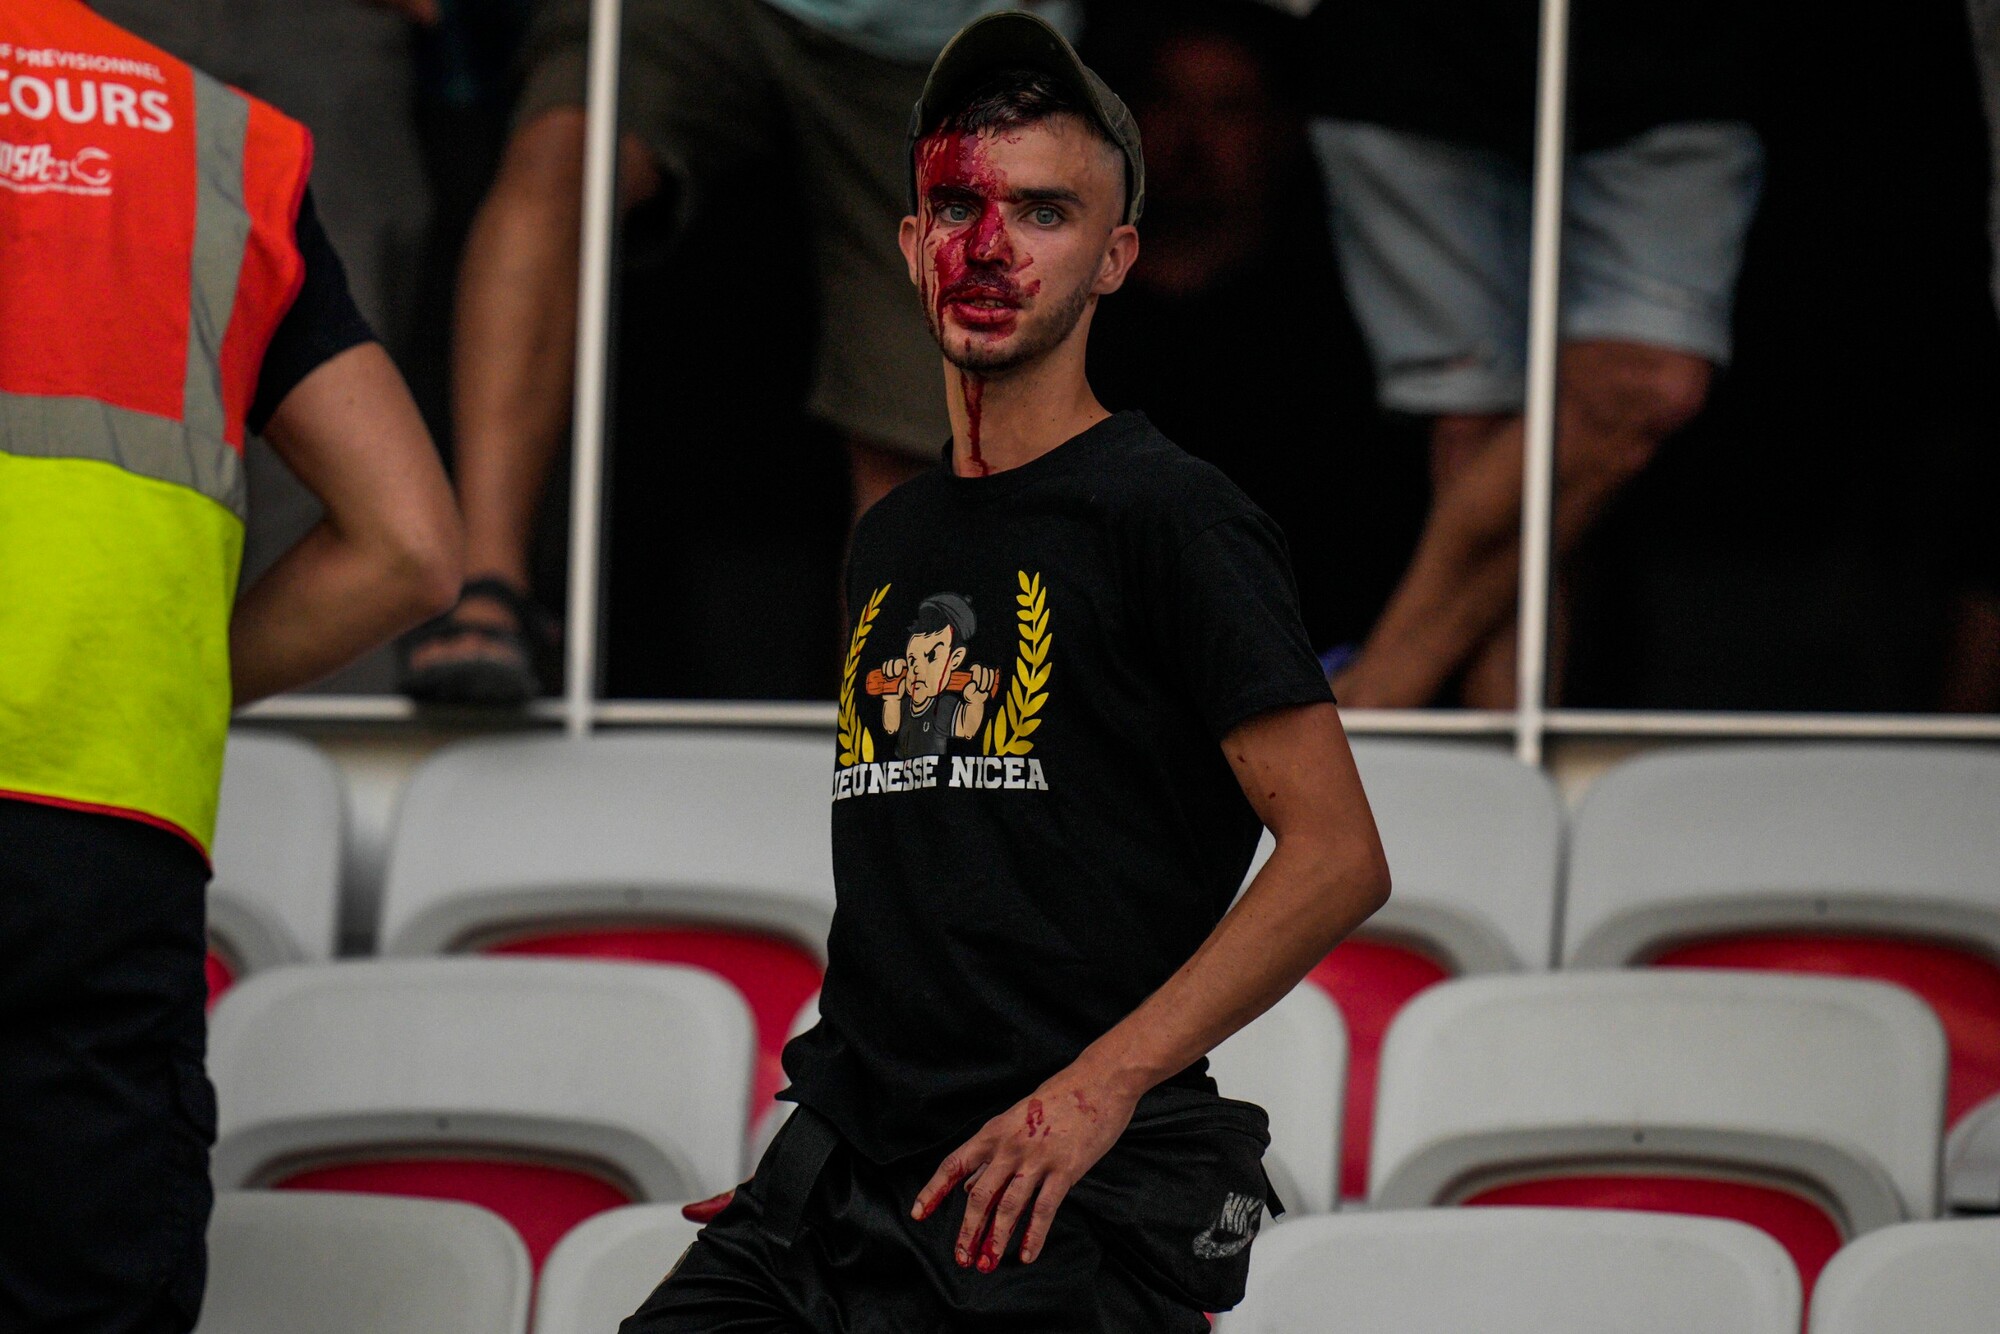 Zakrvavený fanúšik Nice po bitke s fanúšikmi Kolína na štadióne pred zápasom EKL vo futbale OGC Nice - 1. FC Kolín. Pre výtržnosti štart zápasu odložili z pôvodných 18:45 na 19:40.